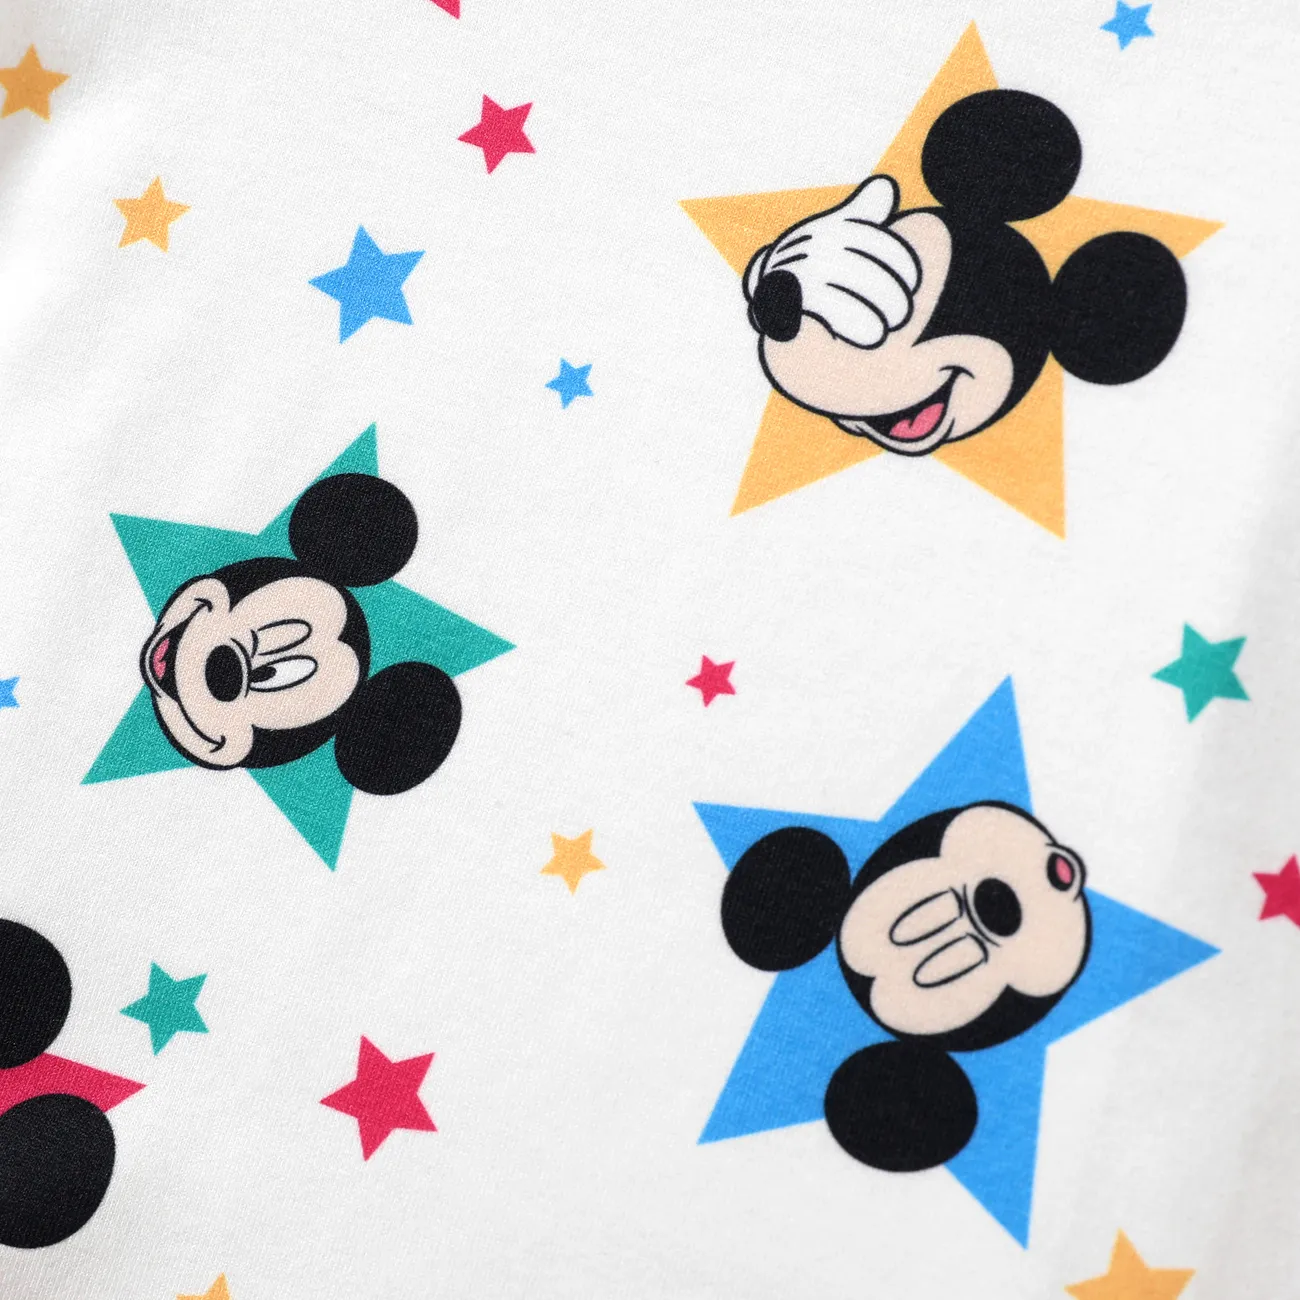 Disney Mickey and Friends Bébé Unisexe Enfantin Manches courtes T-Shirt Bleu big image 1